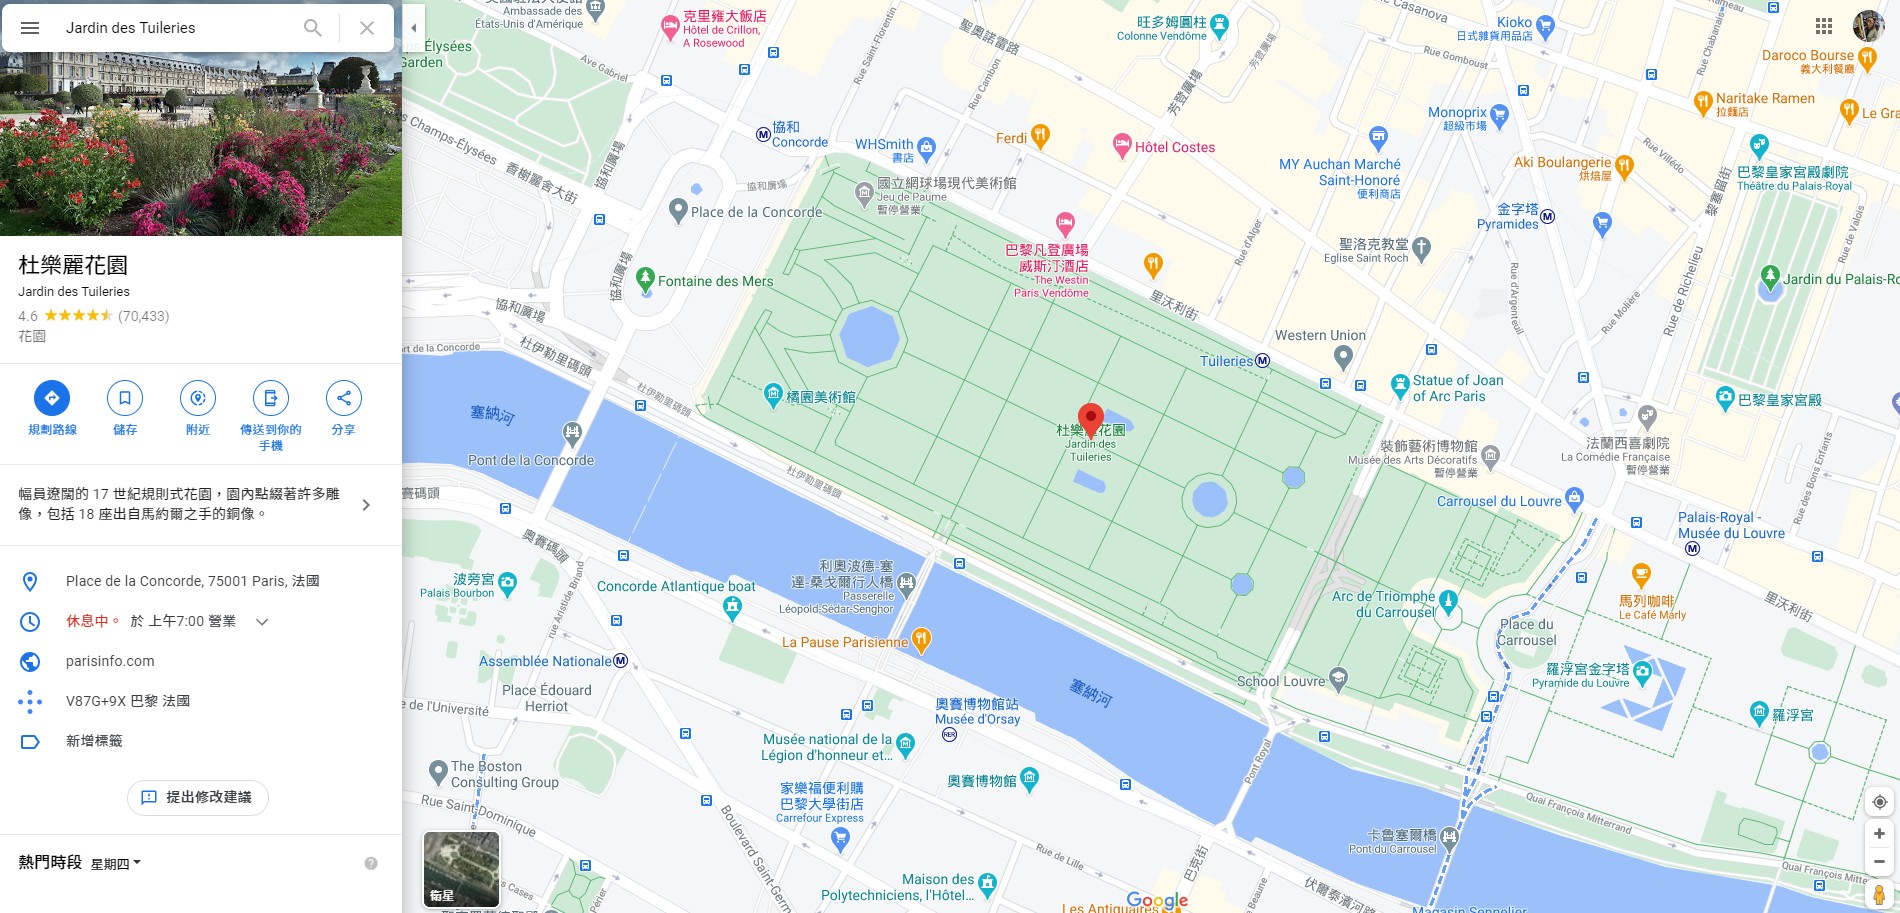 【2022巴黎聖誕市集】杜樂麗花園聖誕市集（Jardin des Tuileries）近羅浮宮、奧賽博物館、巴黎大皇宮 @GINA環球旅行生活